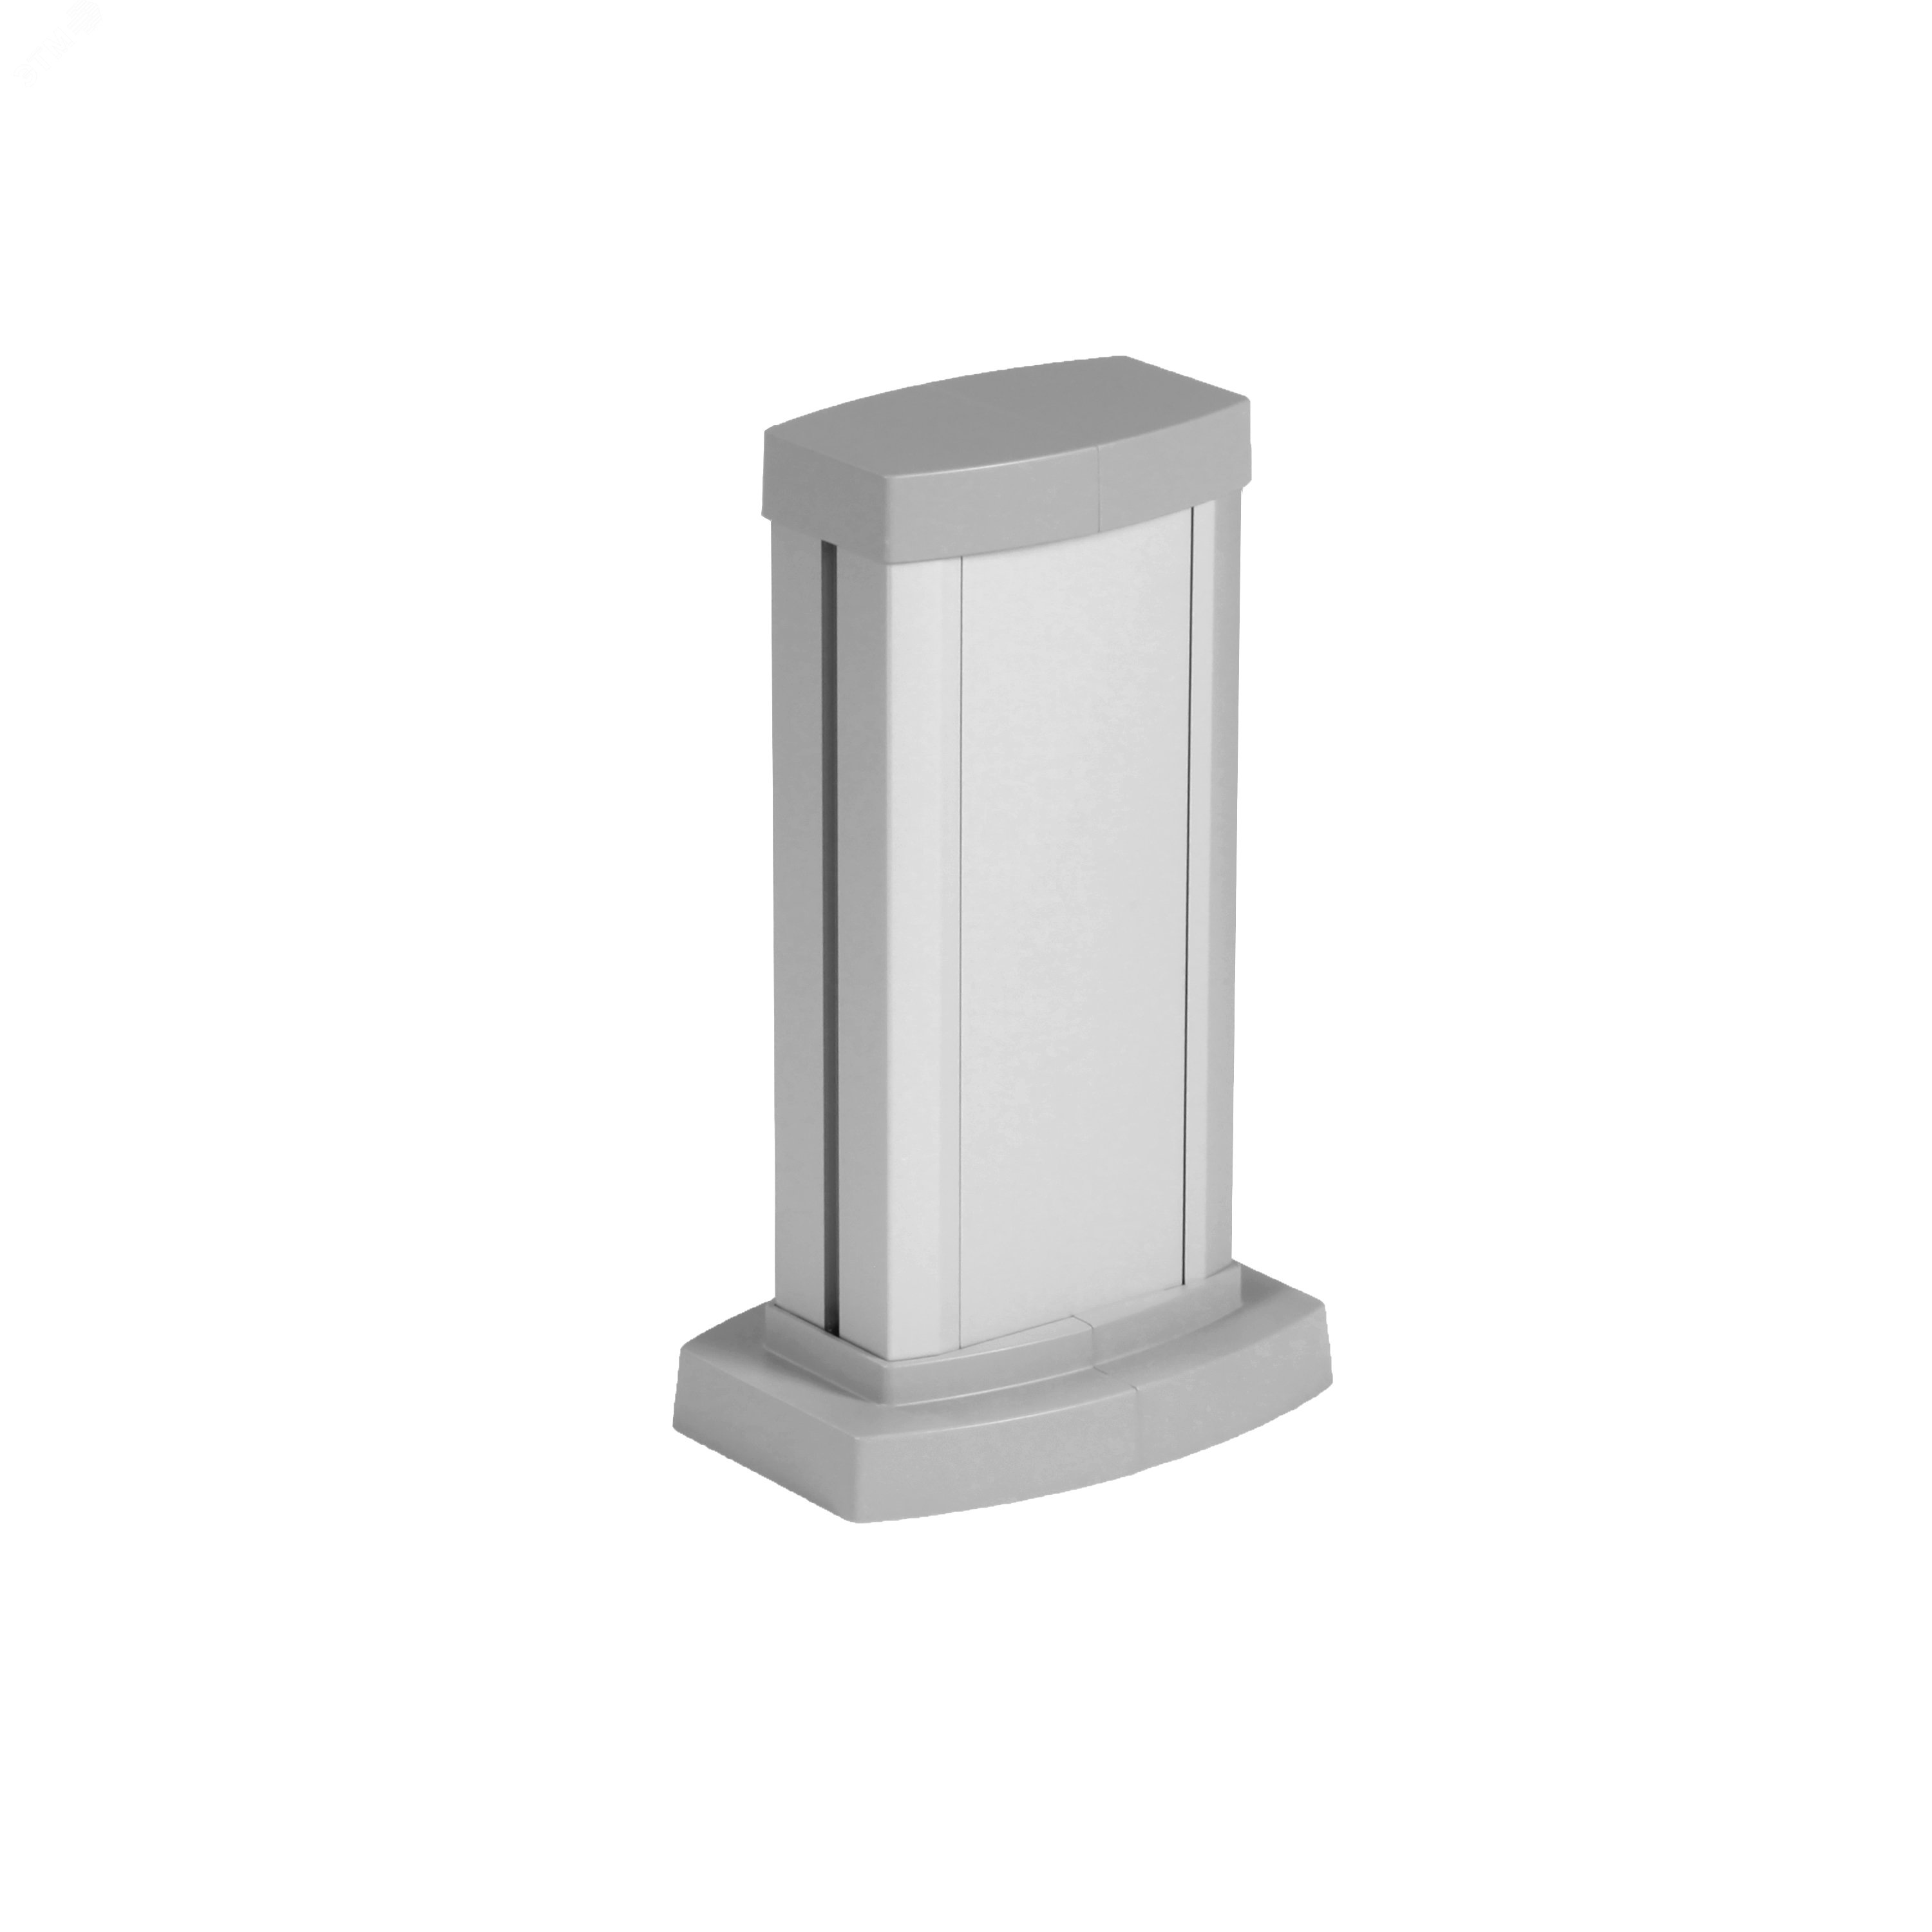 Универсальная мини-колонна алюминиевая с крышкой из алюминия 1 секция, высота 0,3 метра, цвет алюминий 653101 Legrand - превью 2